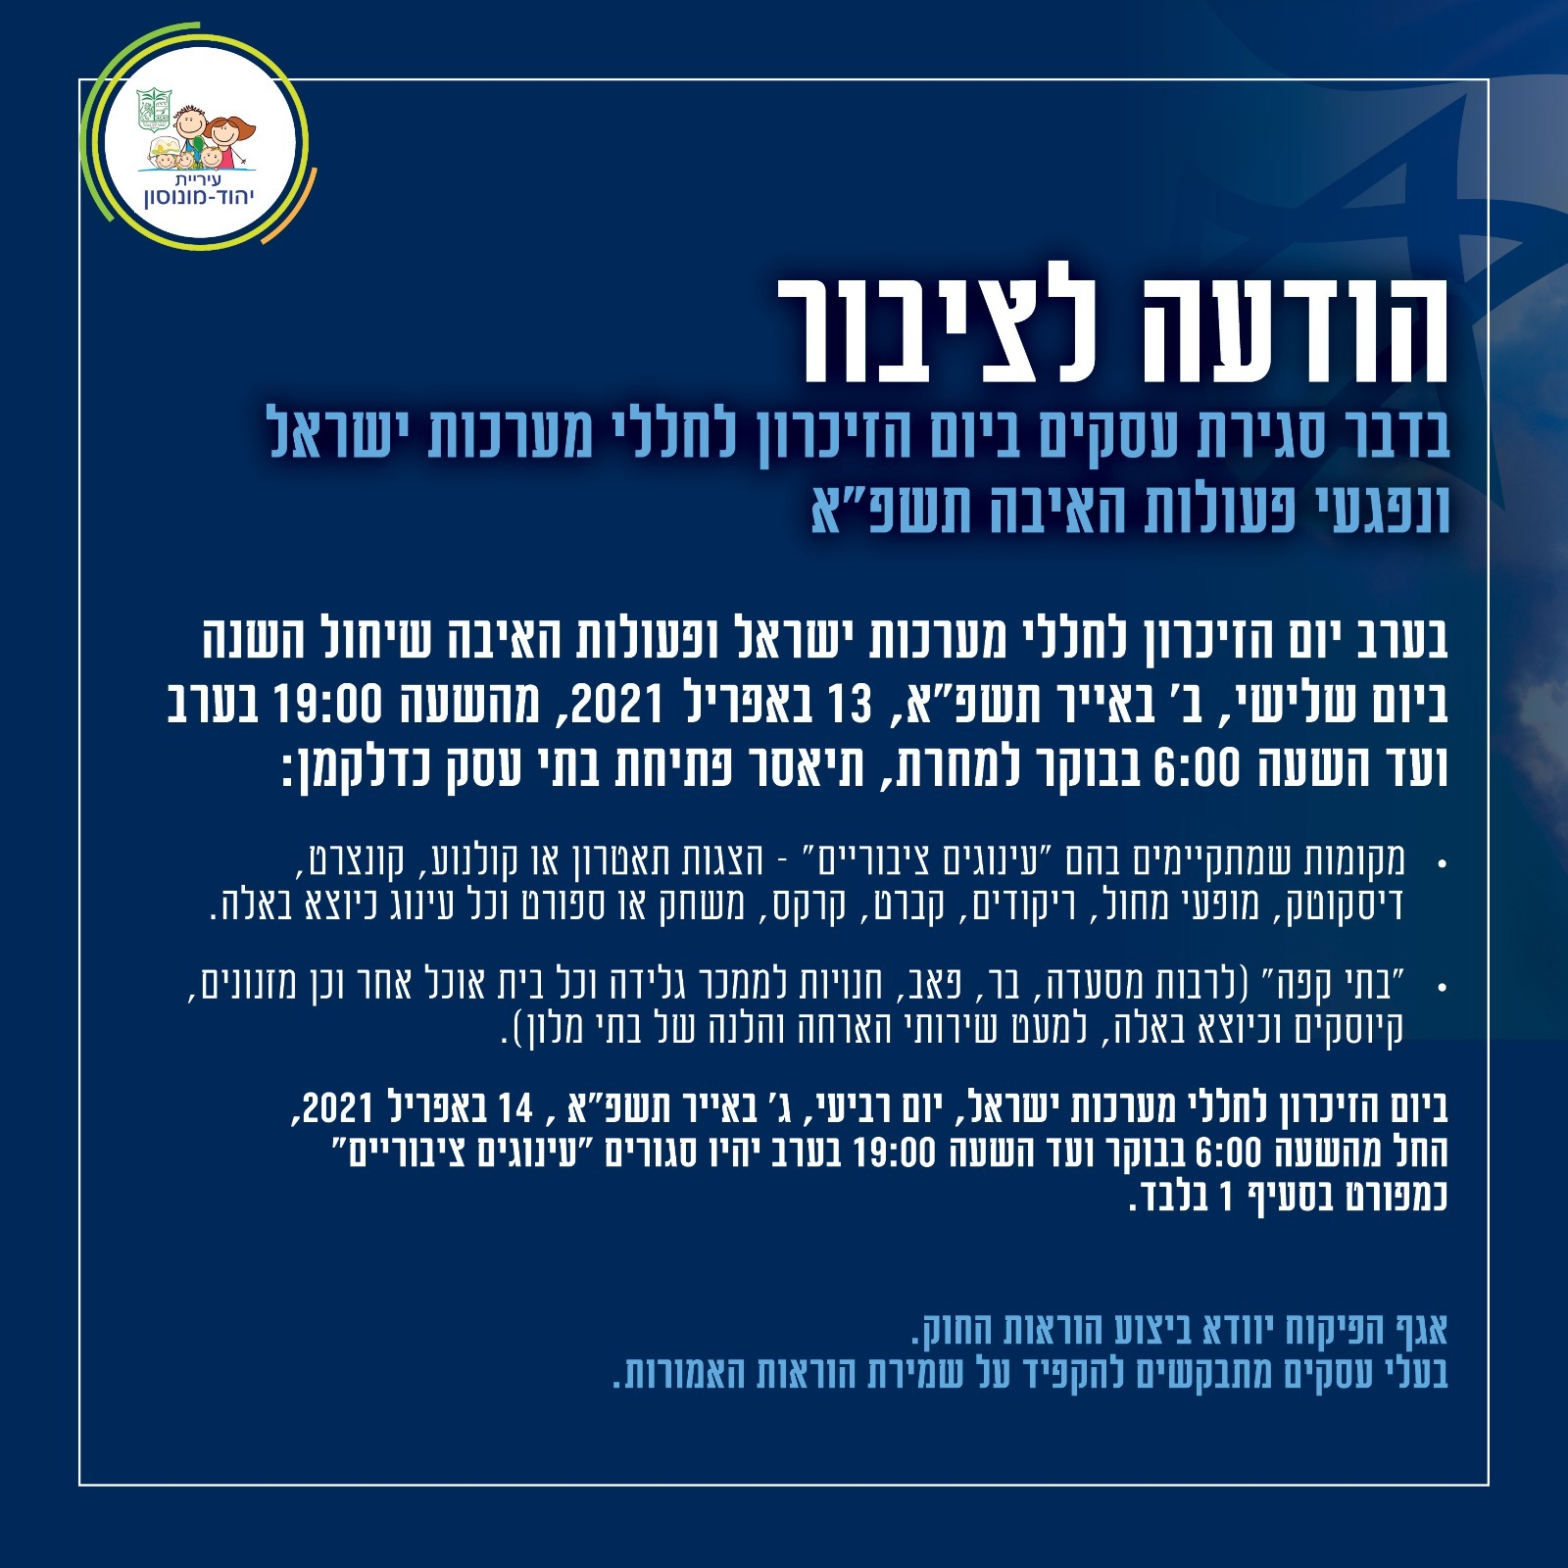 הודעה לציבור בדבר סגירת עסקים ביום הזיכרון לחללי מערכות ישראל ונפגעי פעולות האיבה תשפ"א